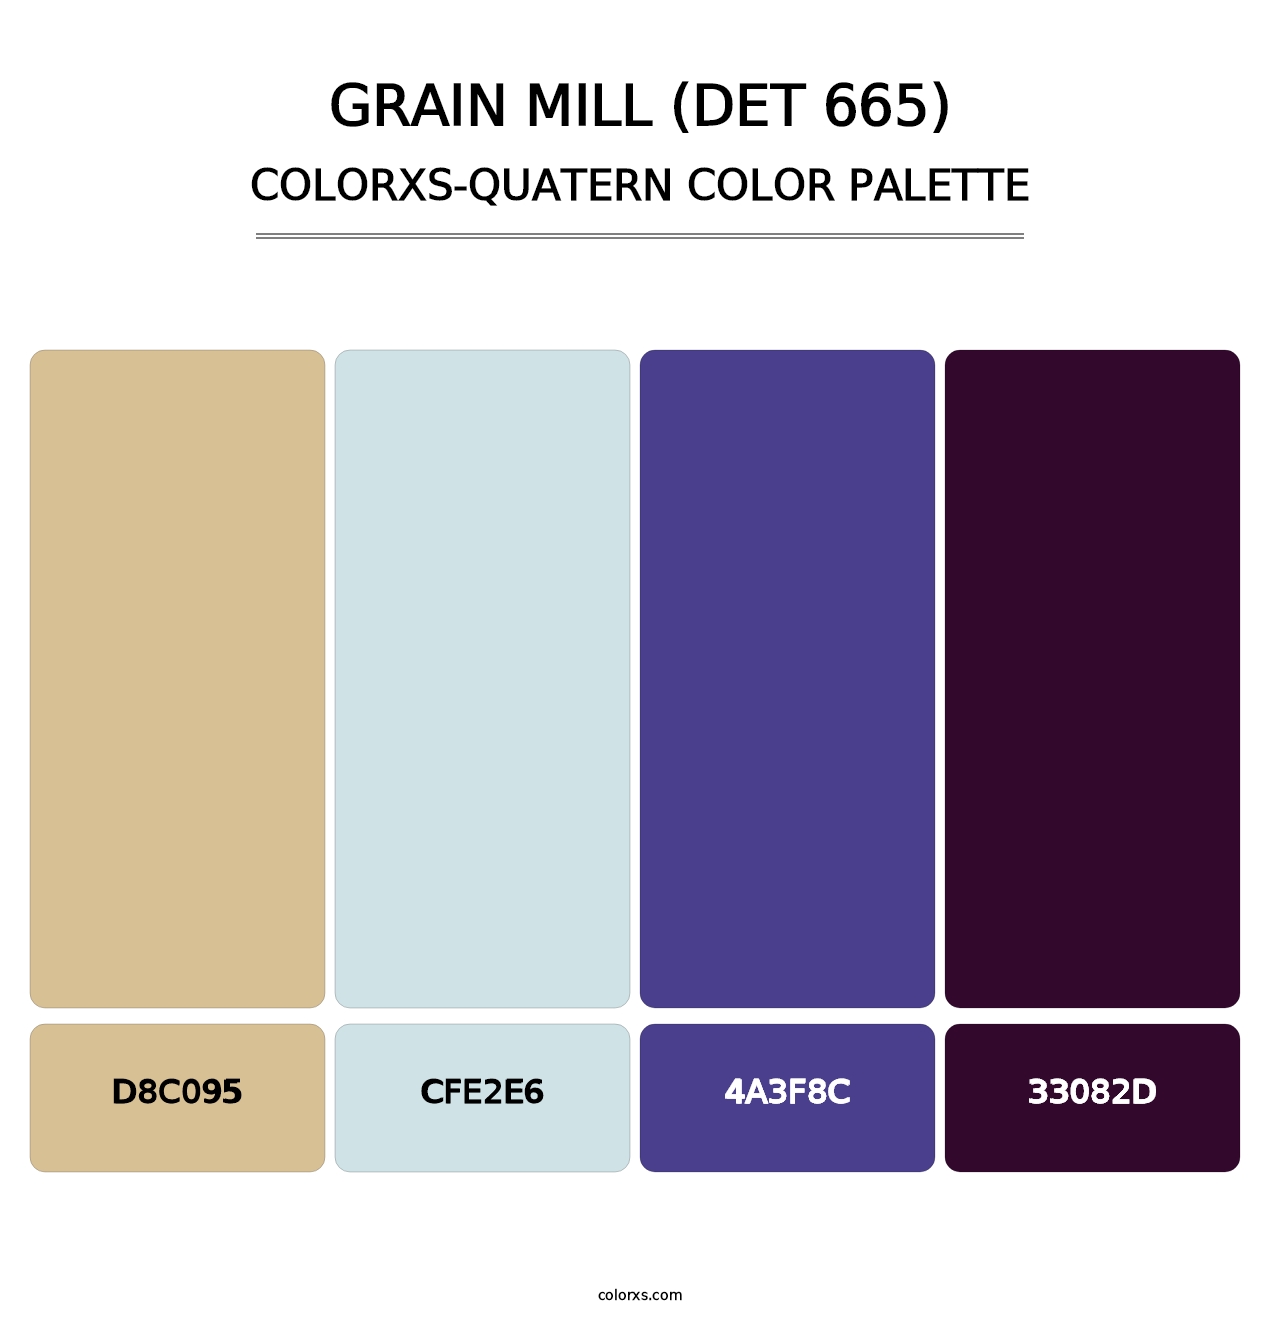 Grain Mill (DET 665) - Colorxs Quatern Palette